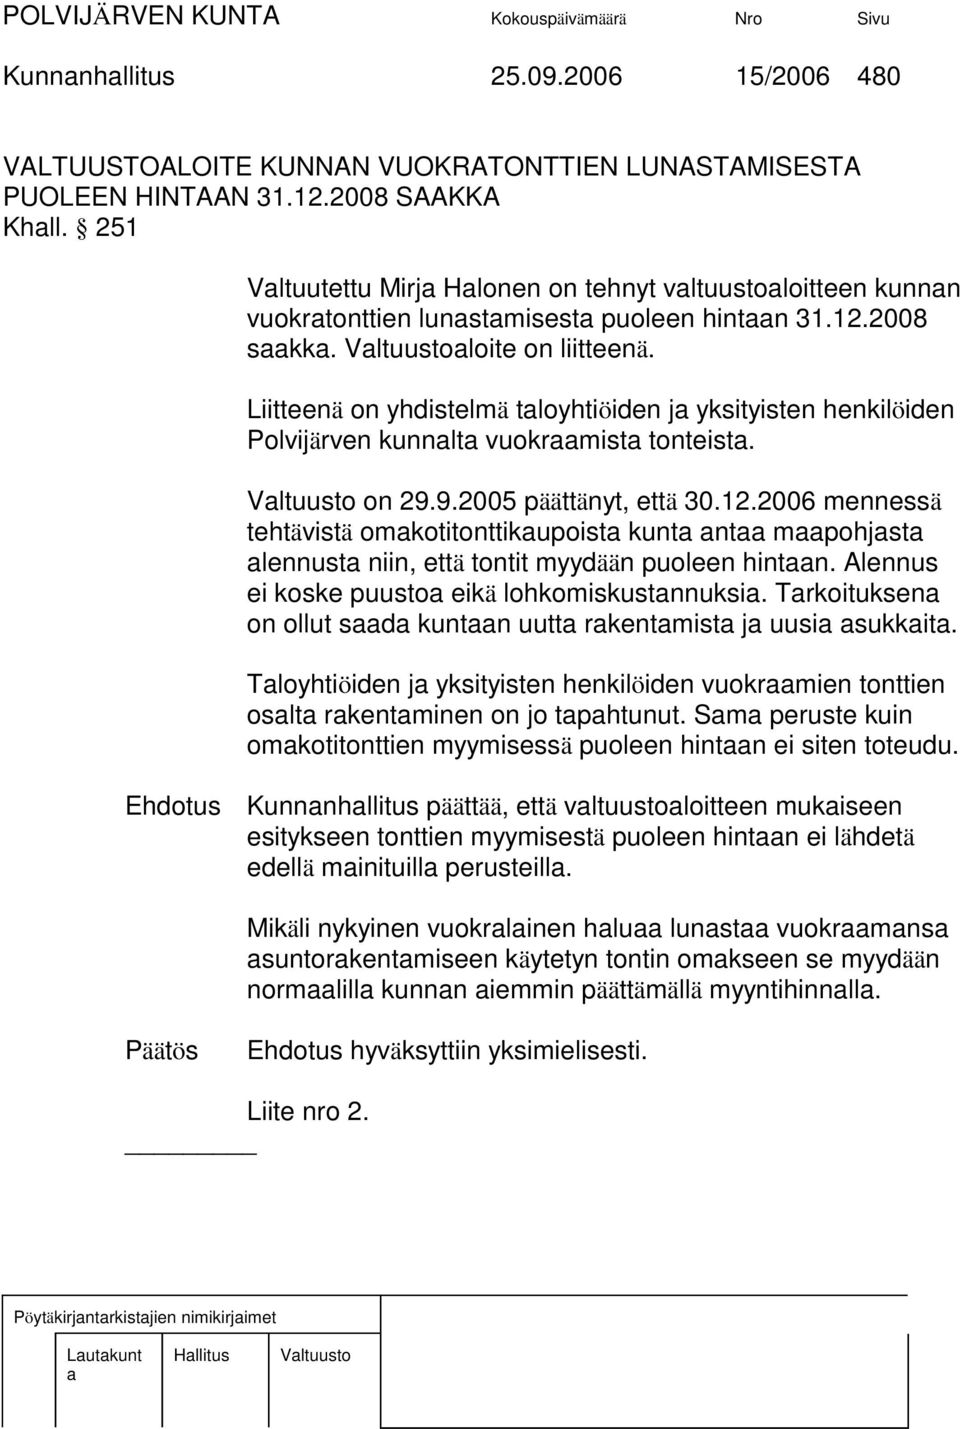 Liitteenä on yhdistelmä tloyhtiöiden j yksityisten henkilöiden Polvijärven kunnlt vuokrmist tonteist. Vltuusto on 29.9.2005 päättänyt, että 30.12.